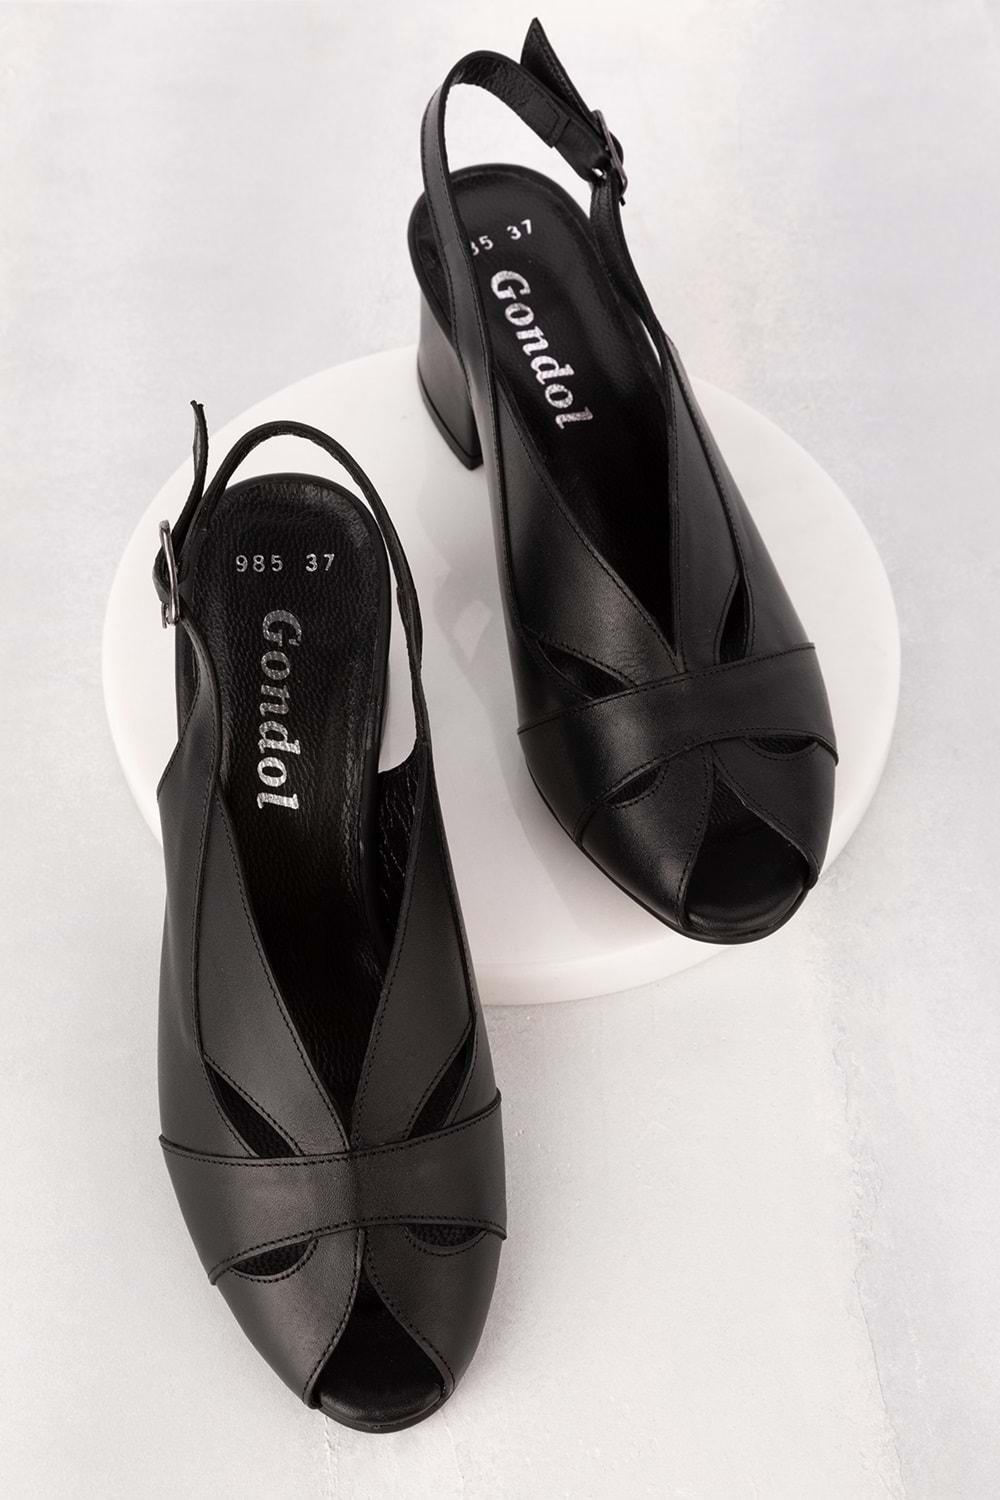 Gondol Hakiki Deri Klasik Topuklu Ayakkabı şhn.985 - Siyah - 40